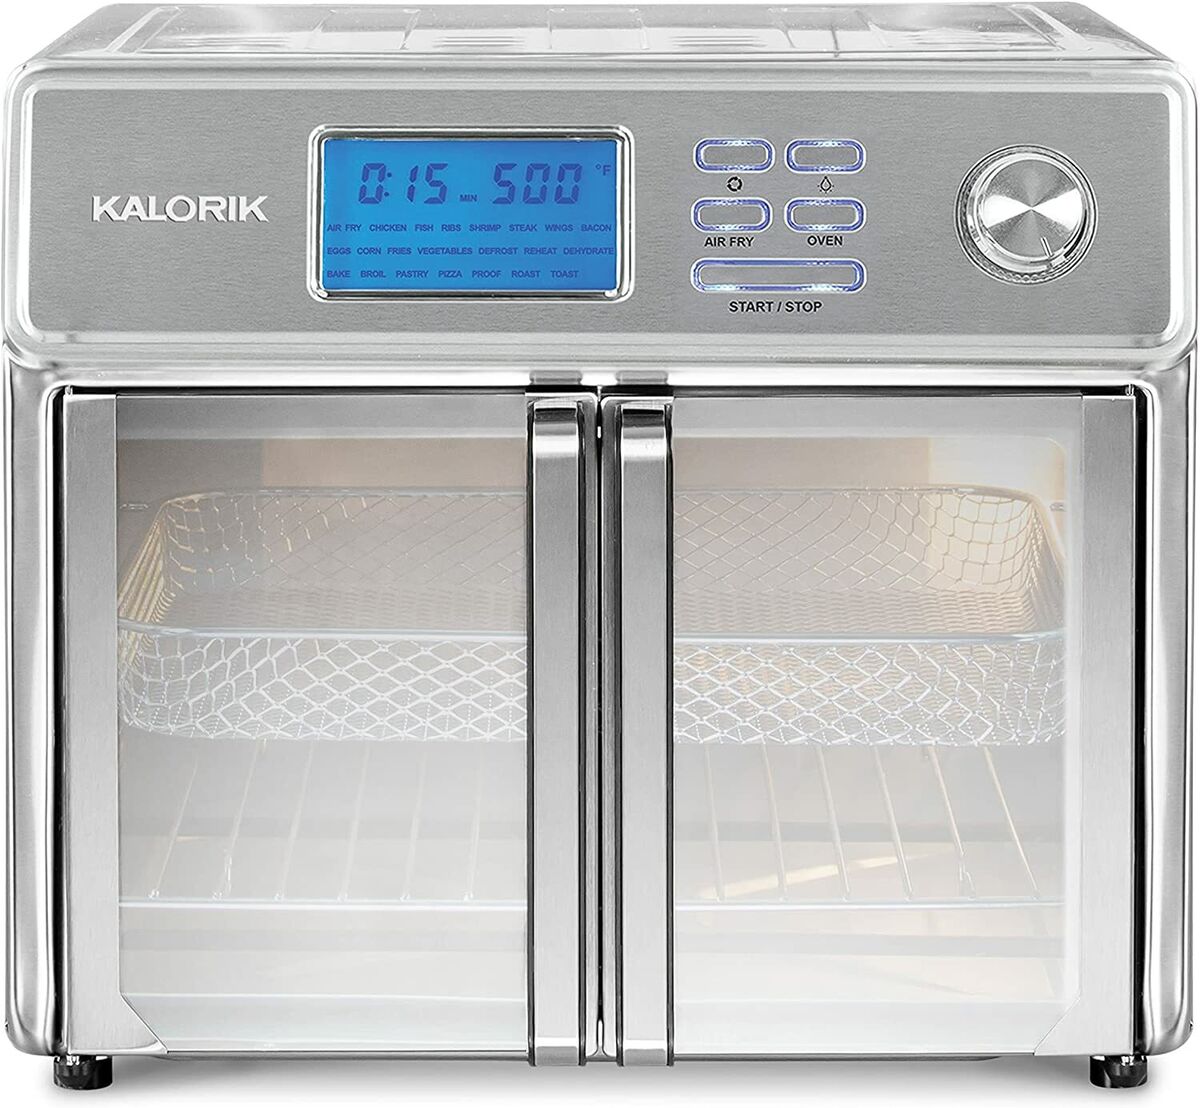 Kalorik 26-Quart Digital Maxx Air Fryer Oven with 7 Accessories